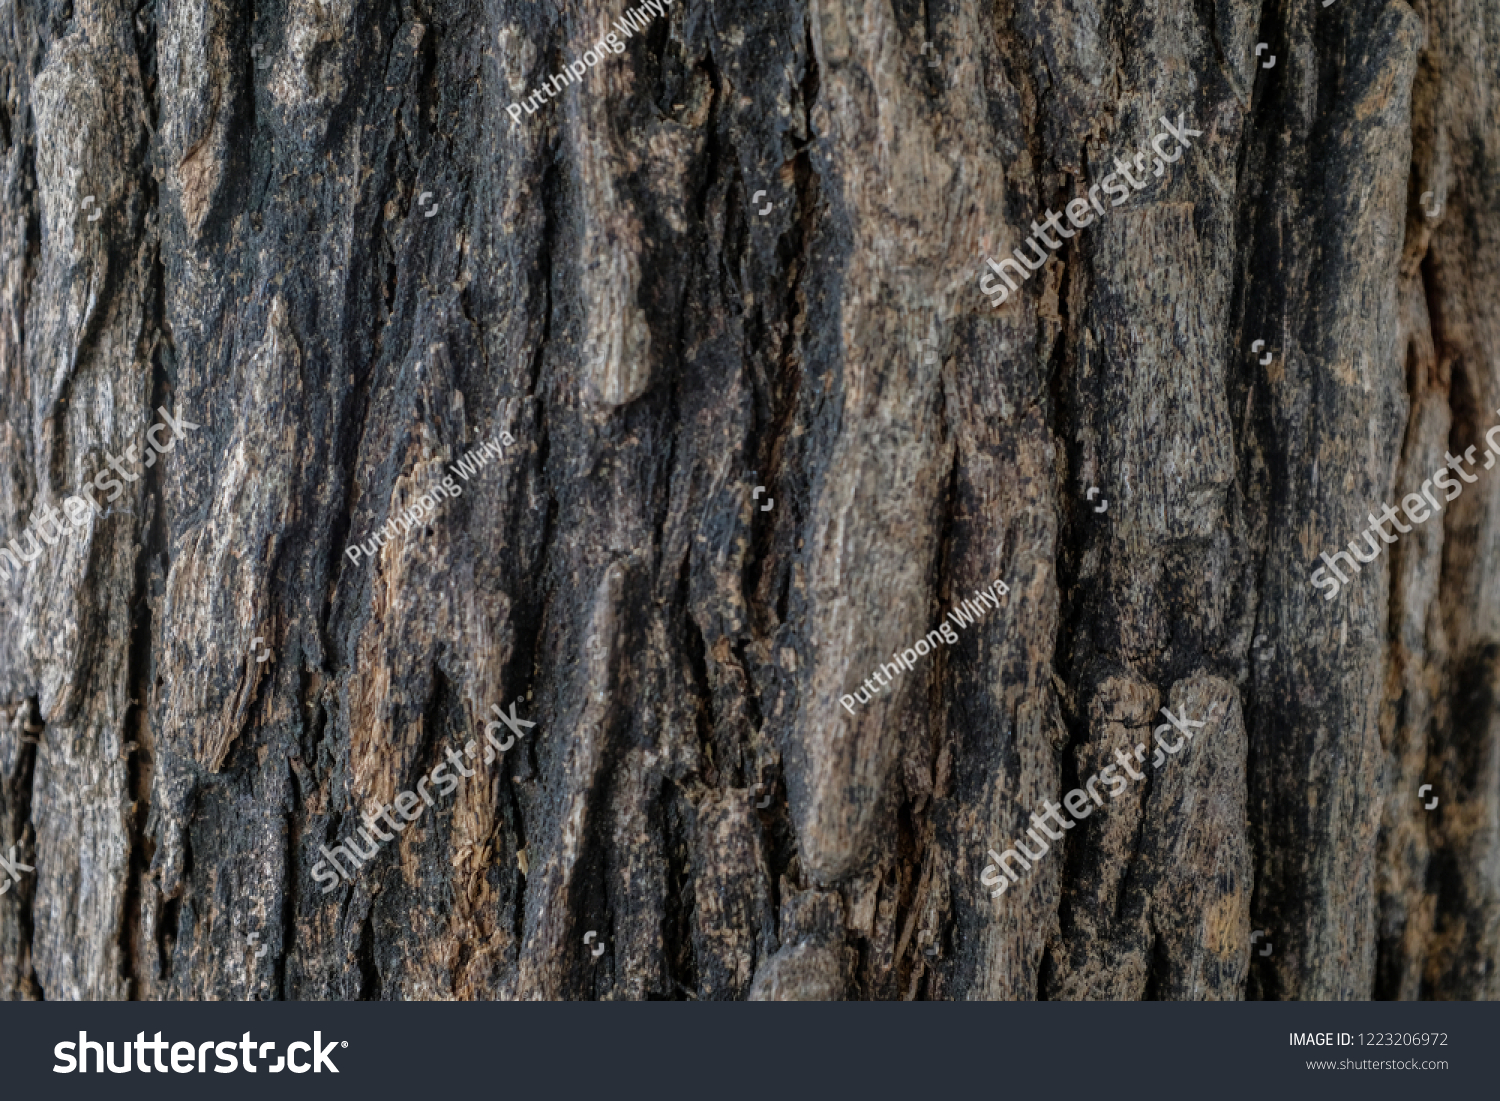 Dark brown old tree bark texture background #1223206972